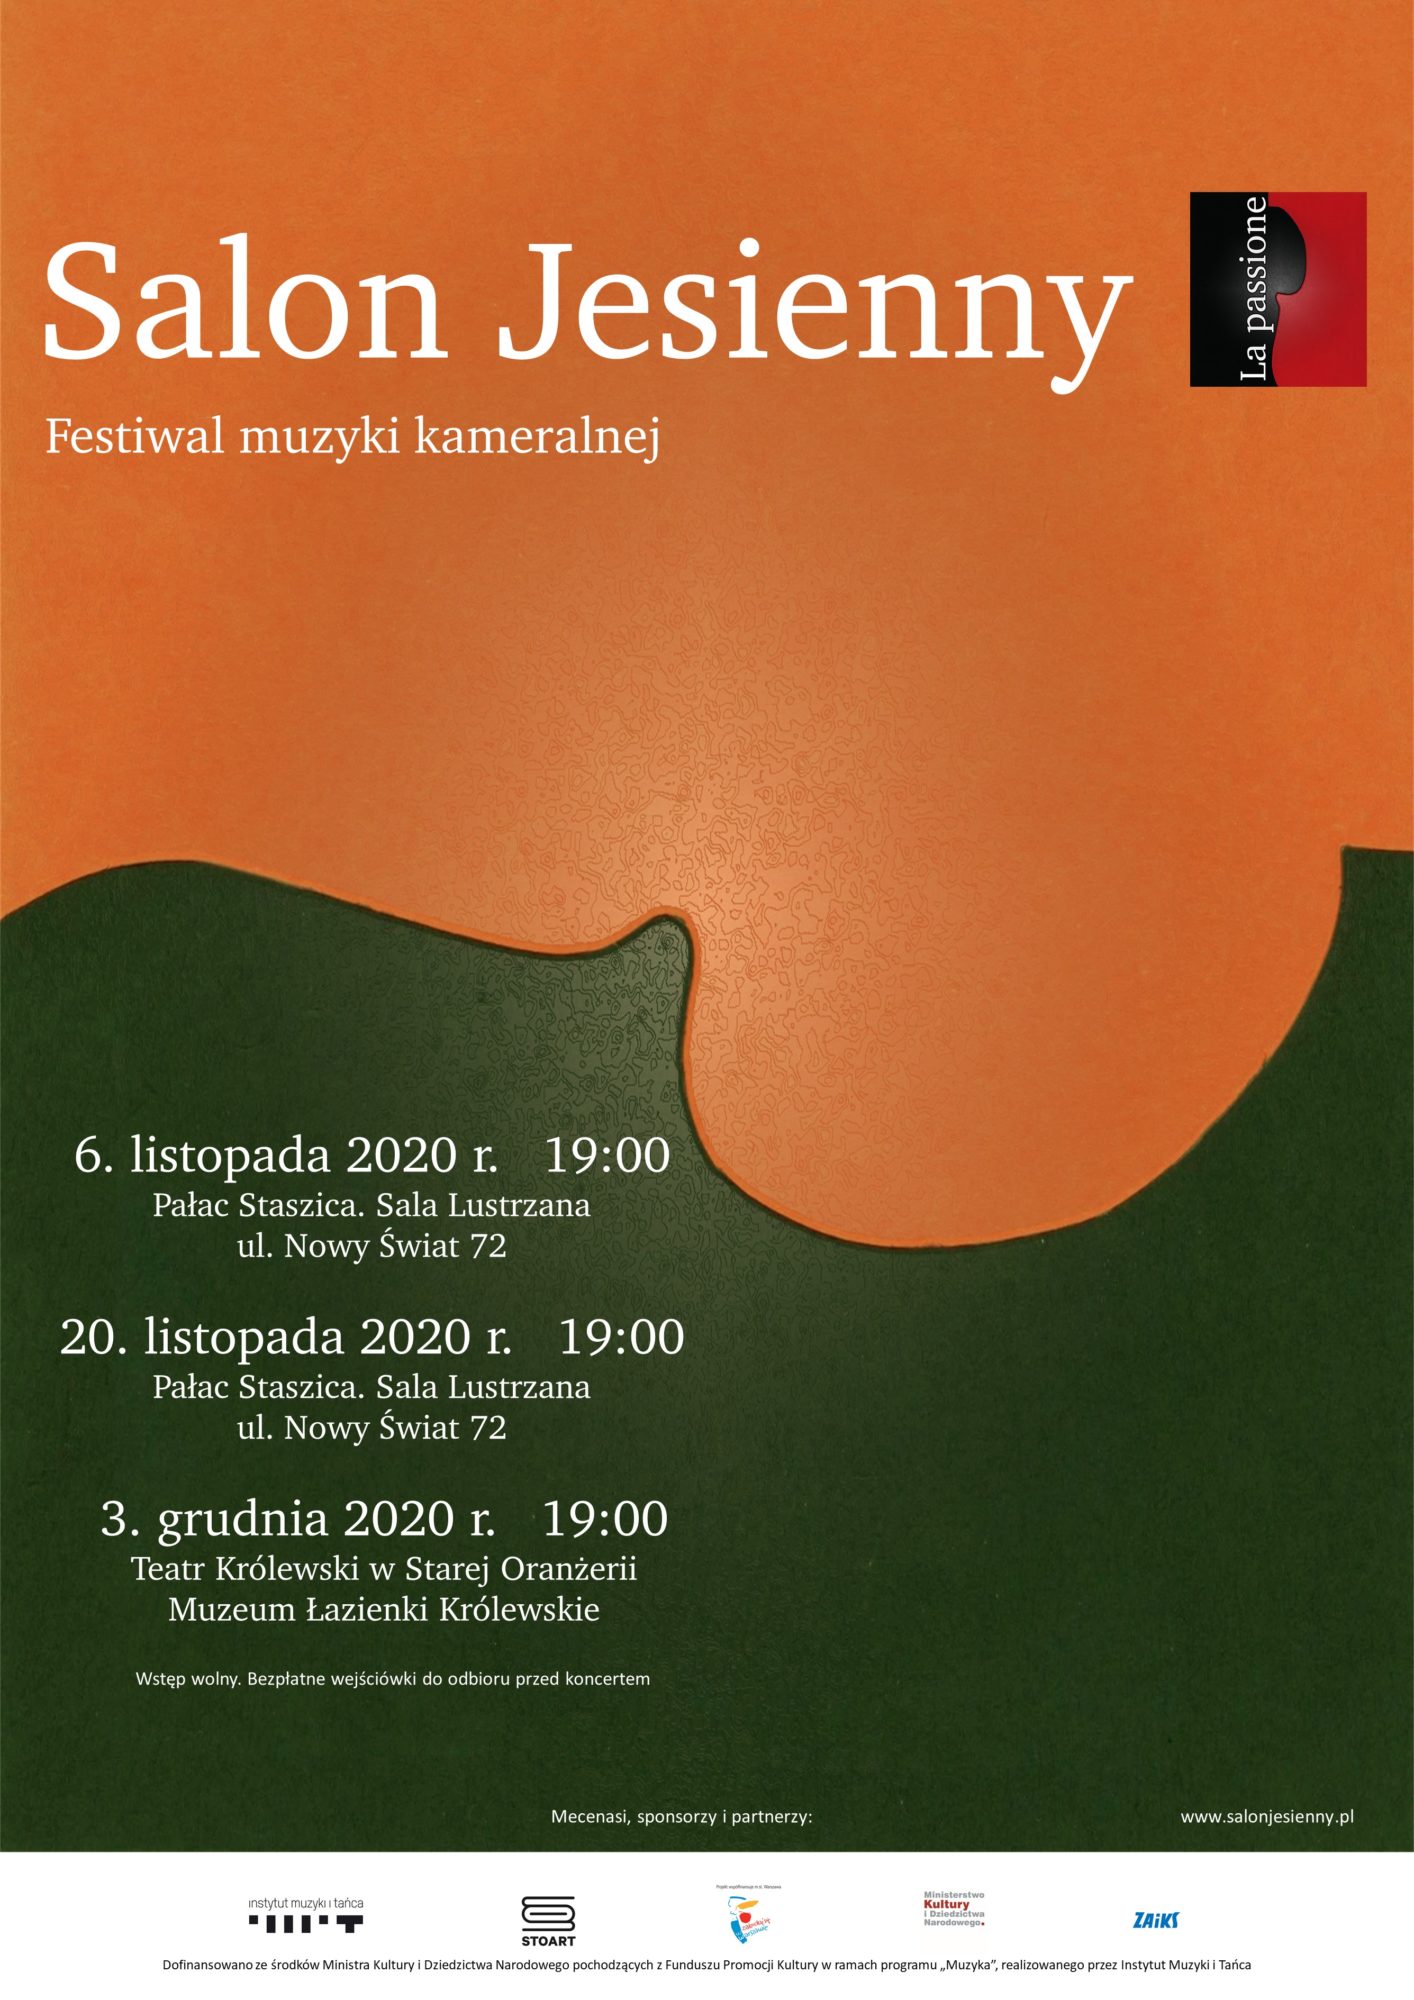 Plakat Festiwal Salon Jesienny 2020